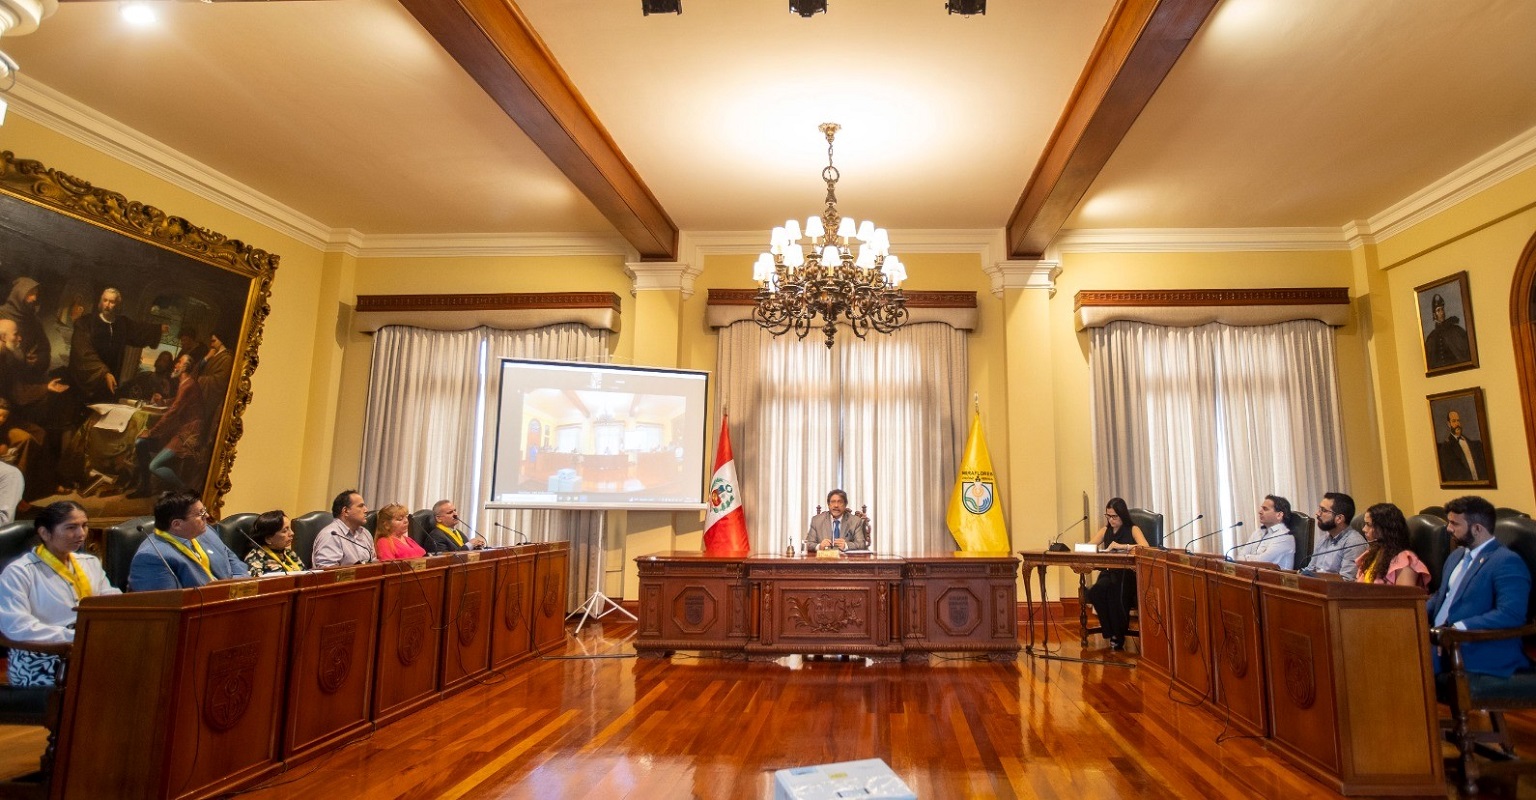 Municipalidad de Miraflores ya cuenta con el “Botón anticorrupción”, se declara la guerra a los funcionarios y trabajadores corruptos.